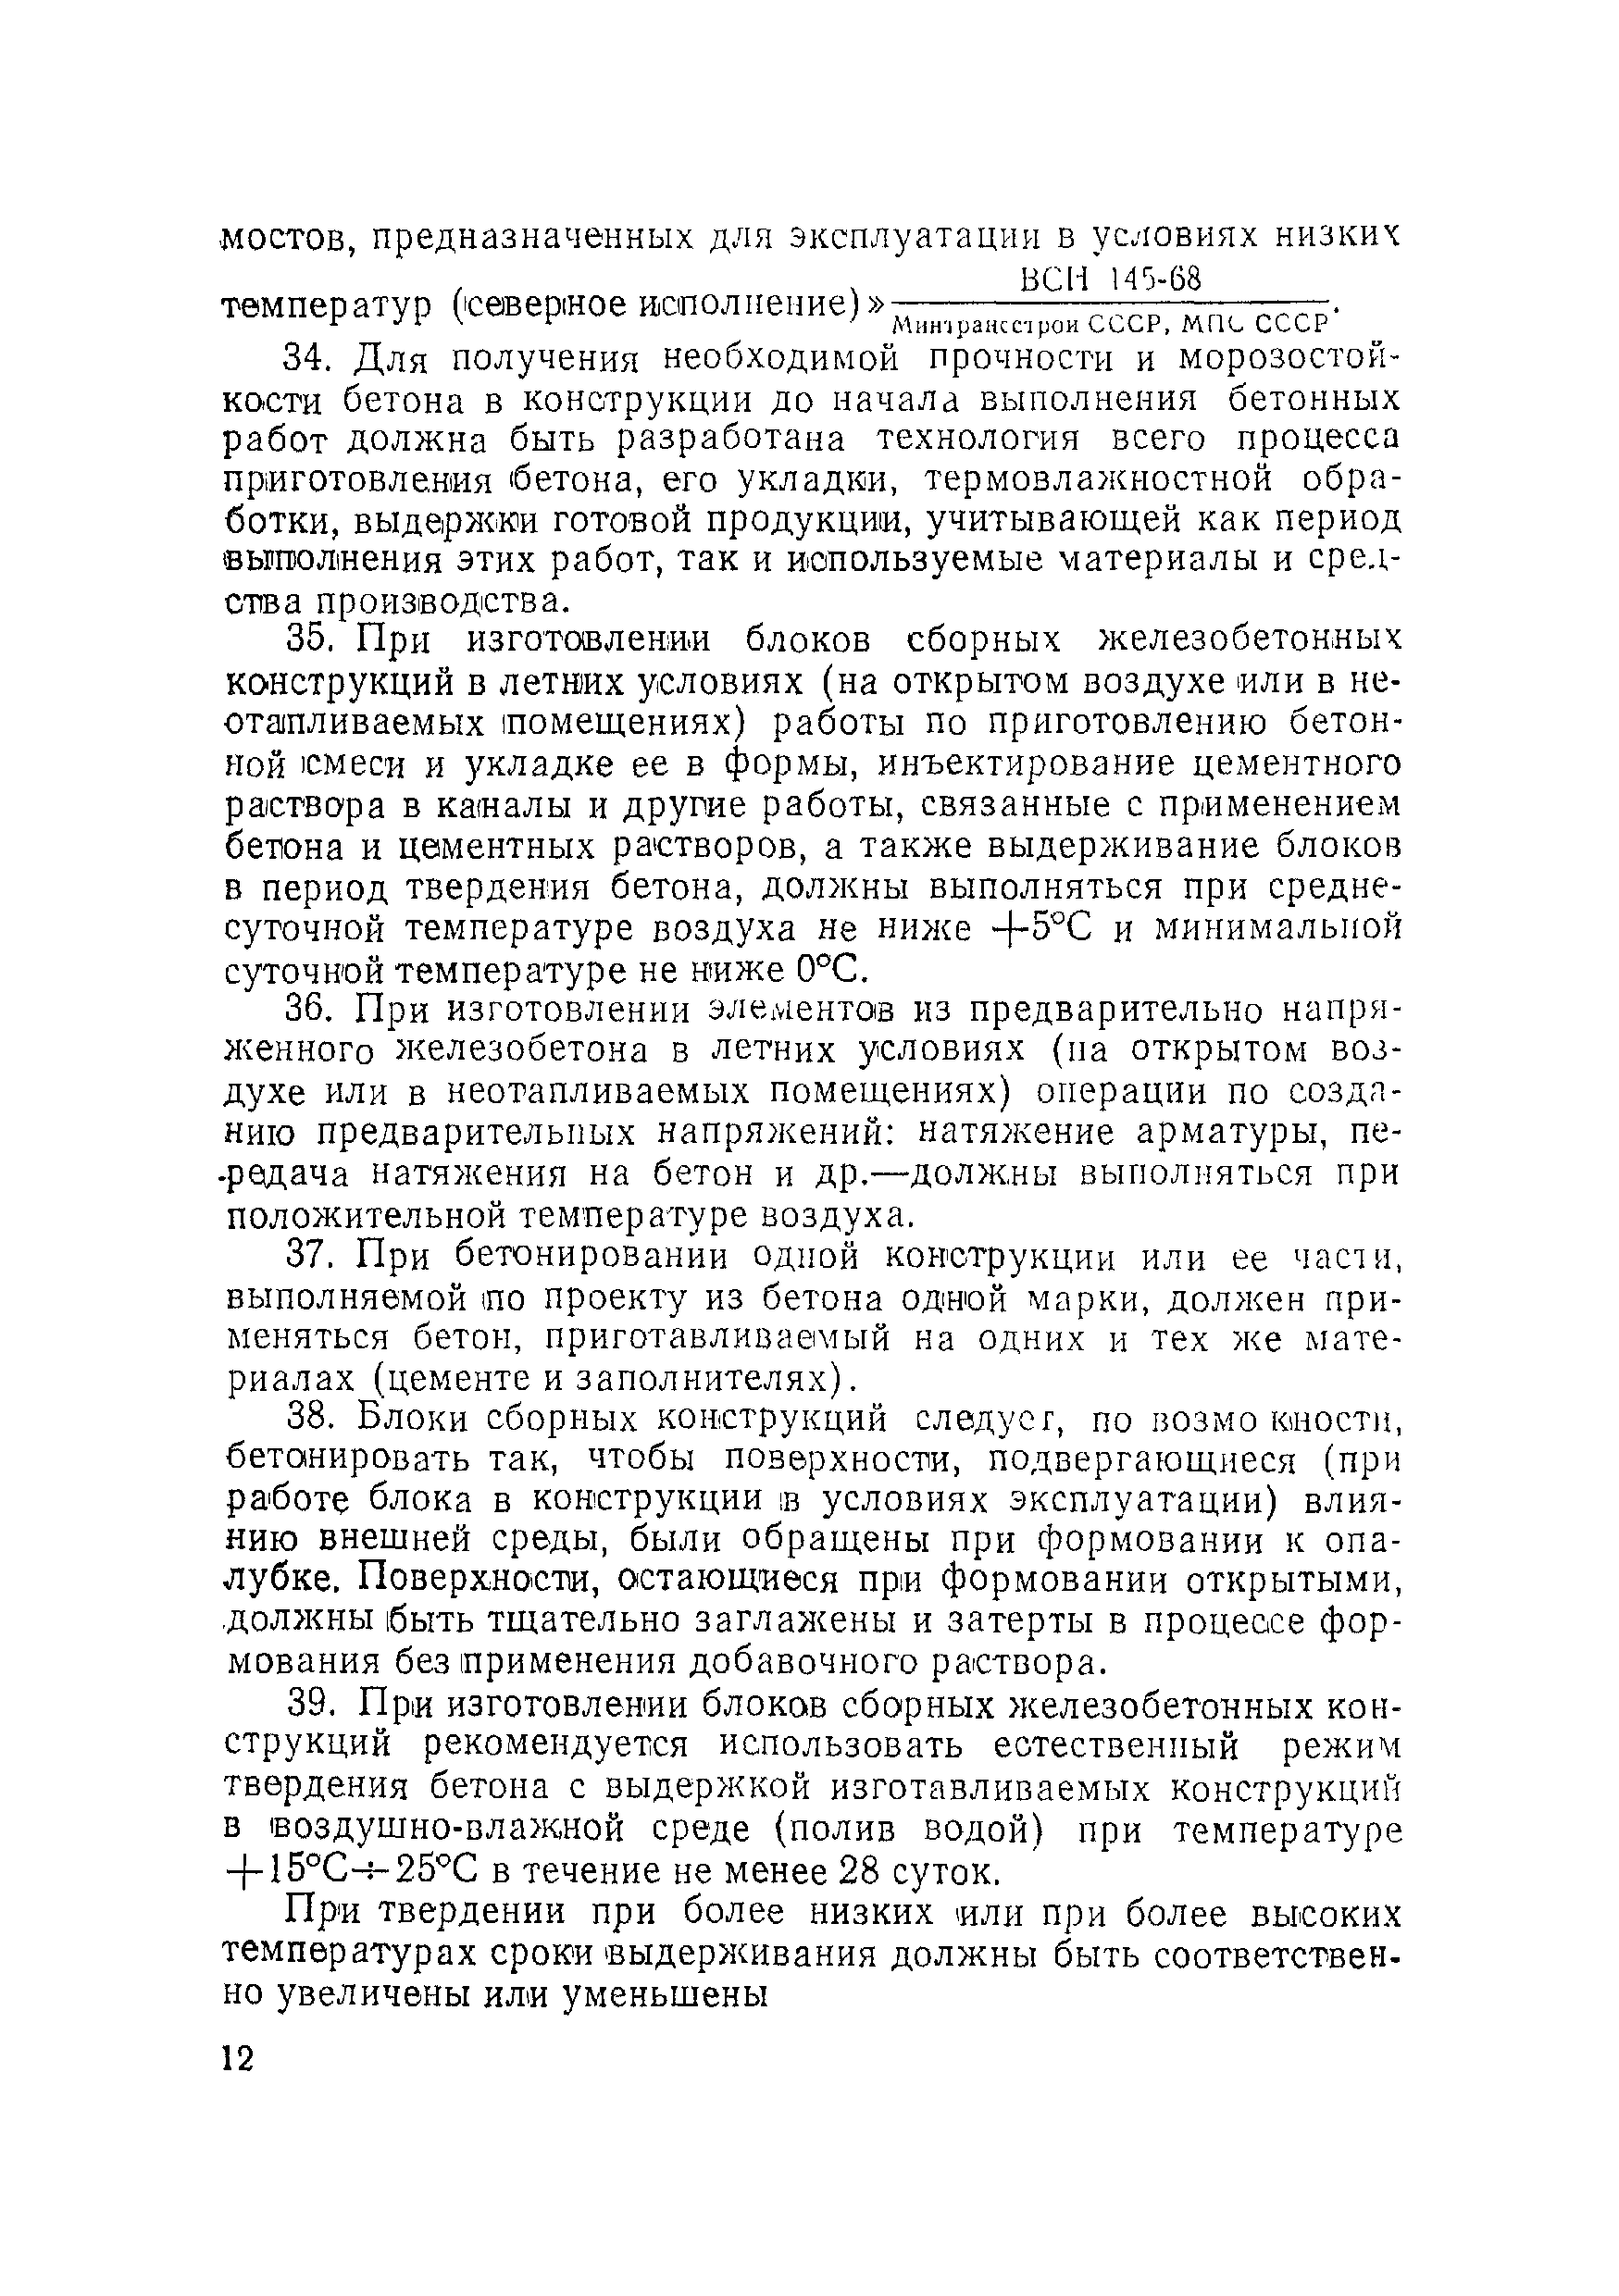 ВСН 155-69/Минтрансстрой СССР